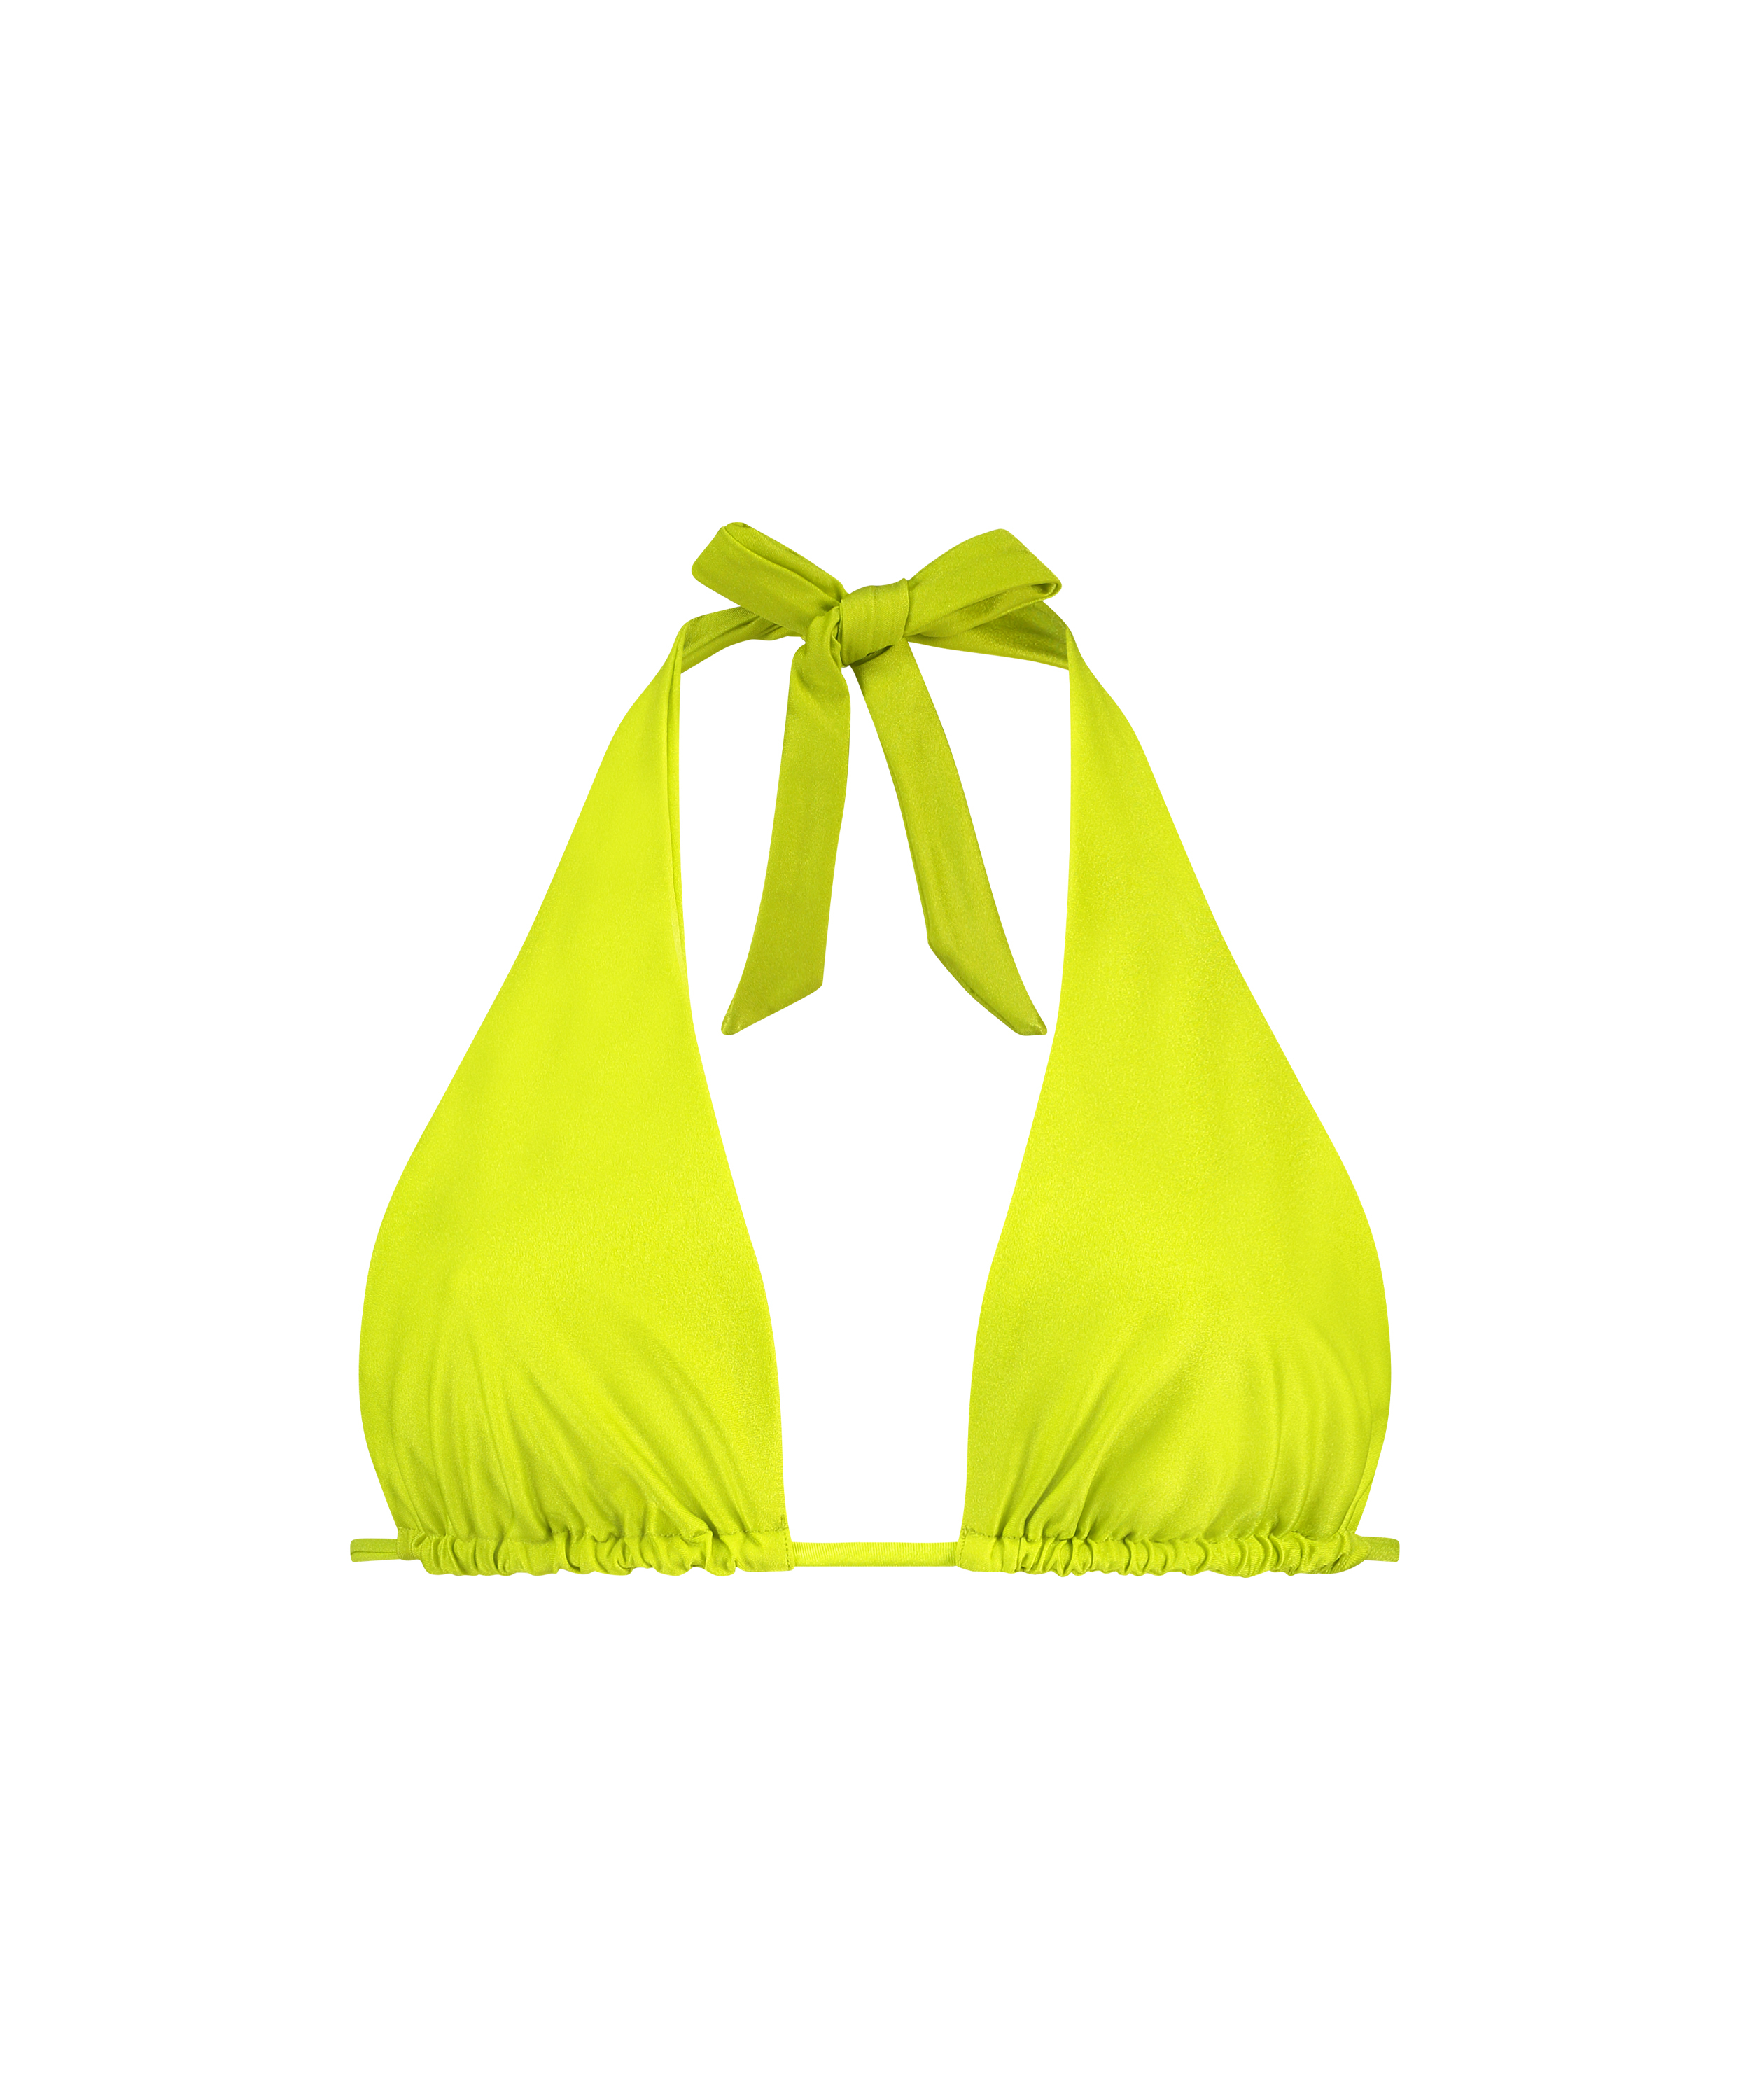 Triangel-Bikini-Top Luxe Multi Way, grün, main